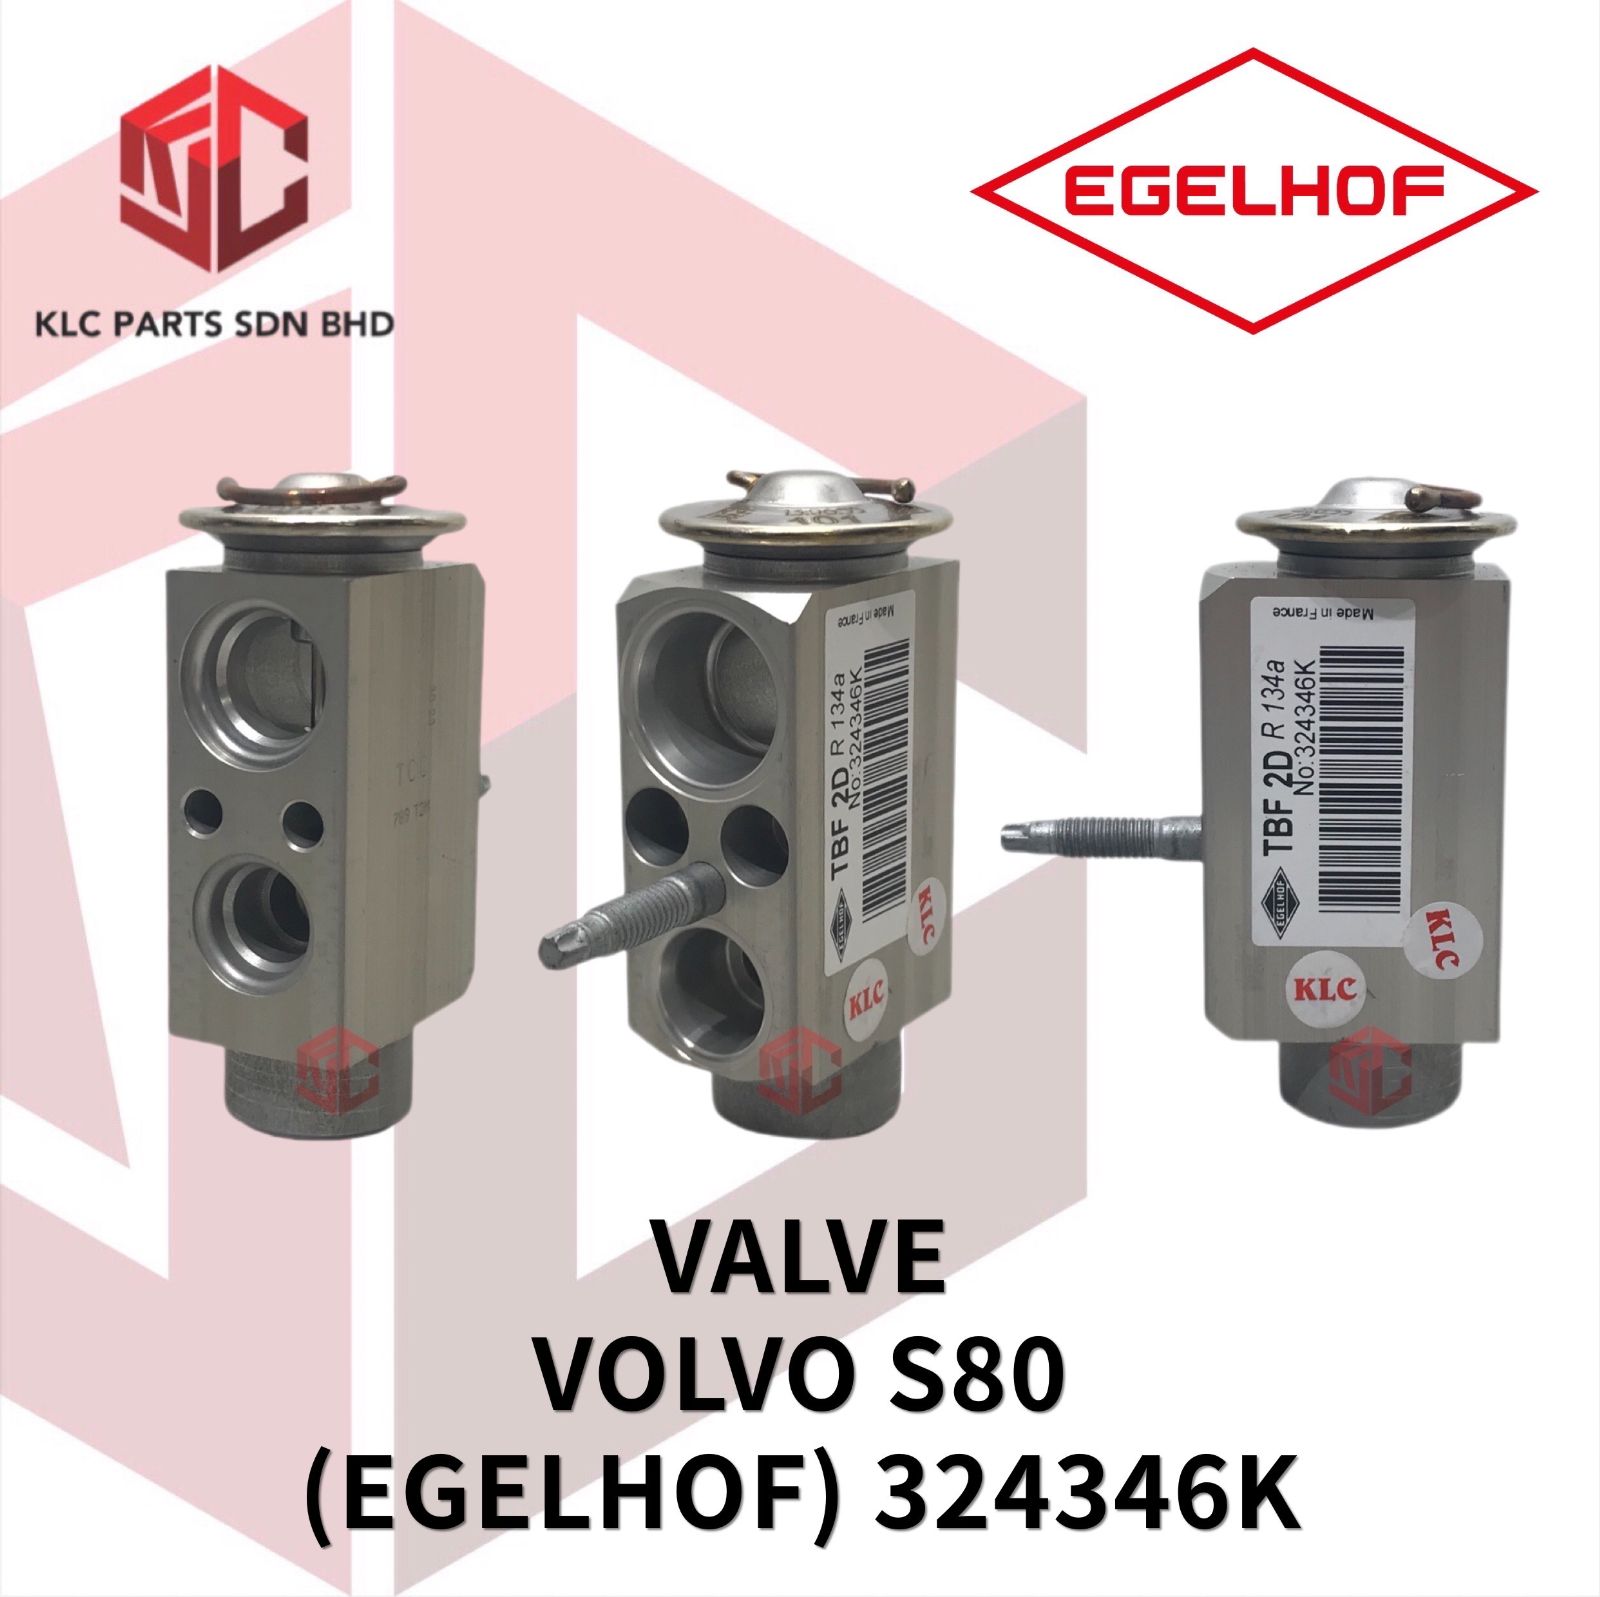 VALVE VOLVO S80 (EGELHOF) 324346K